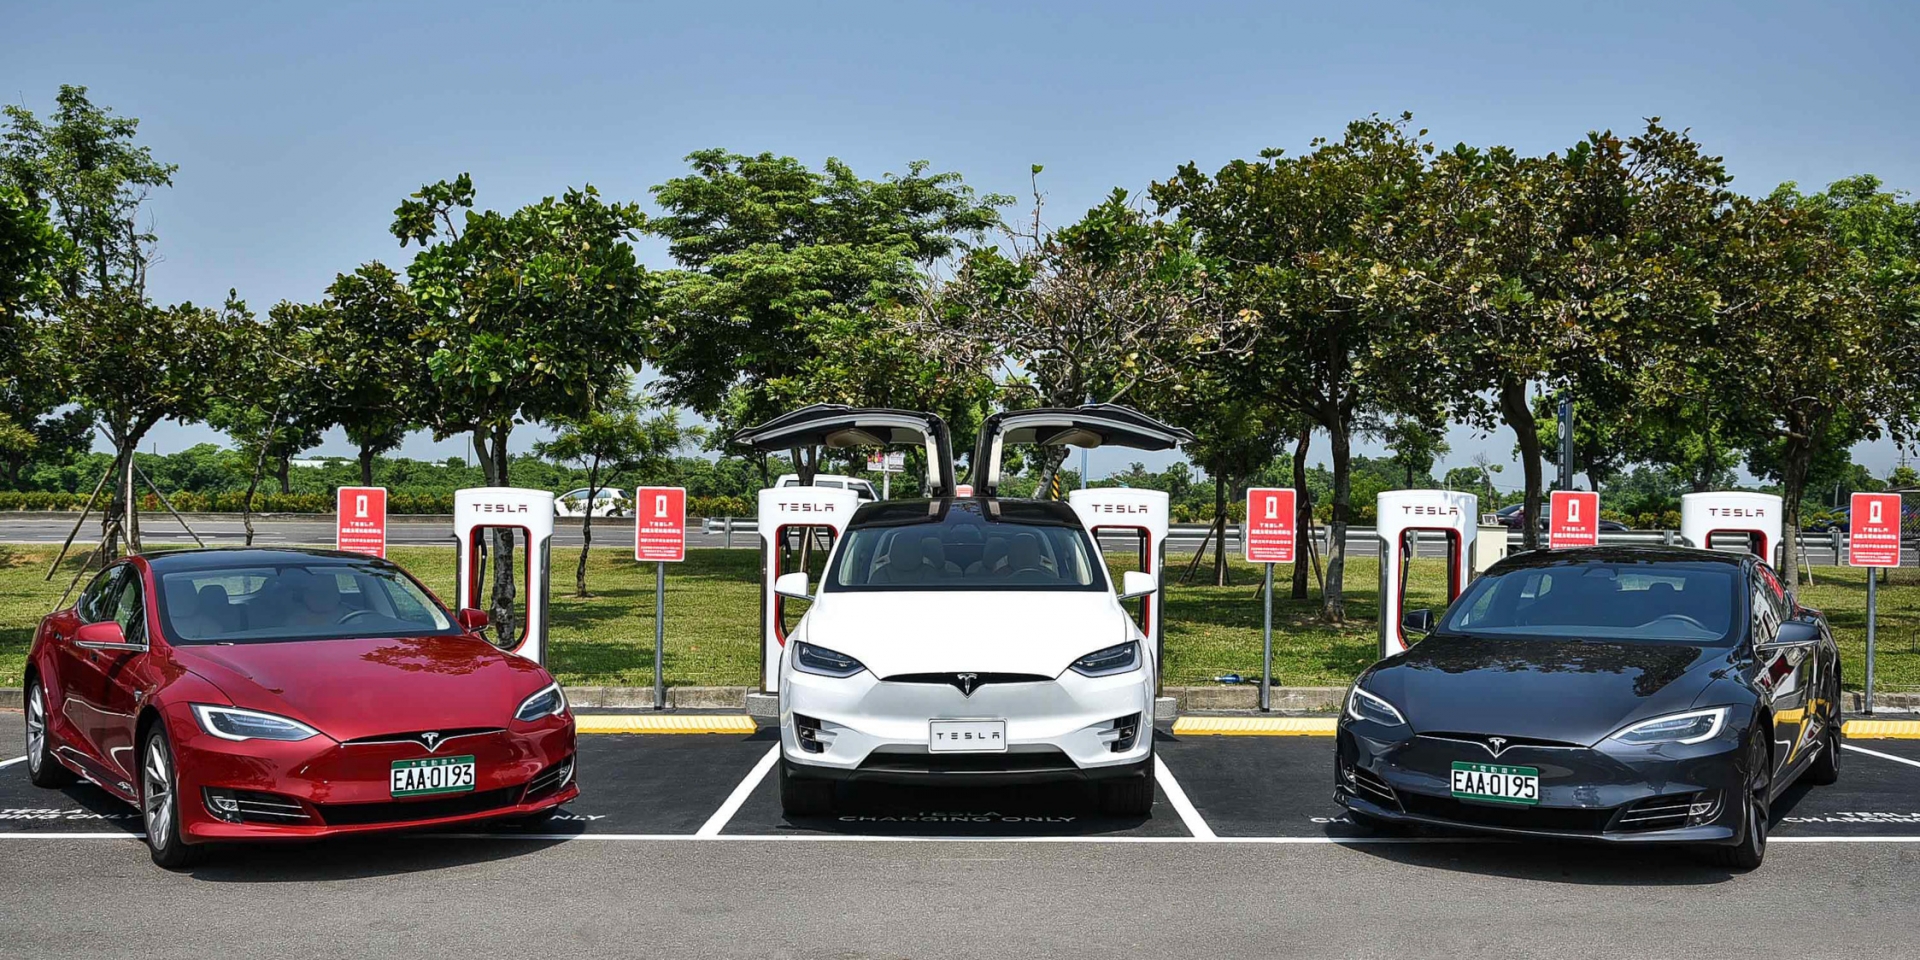 官方新聞稿。Tesla宣布啟用台南超級充電站—持續擴大充電網絡 覆蓋環島里程